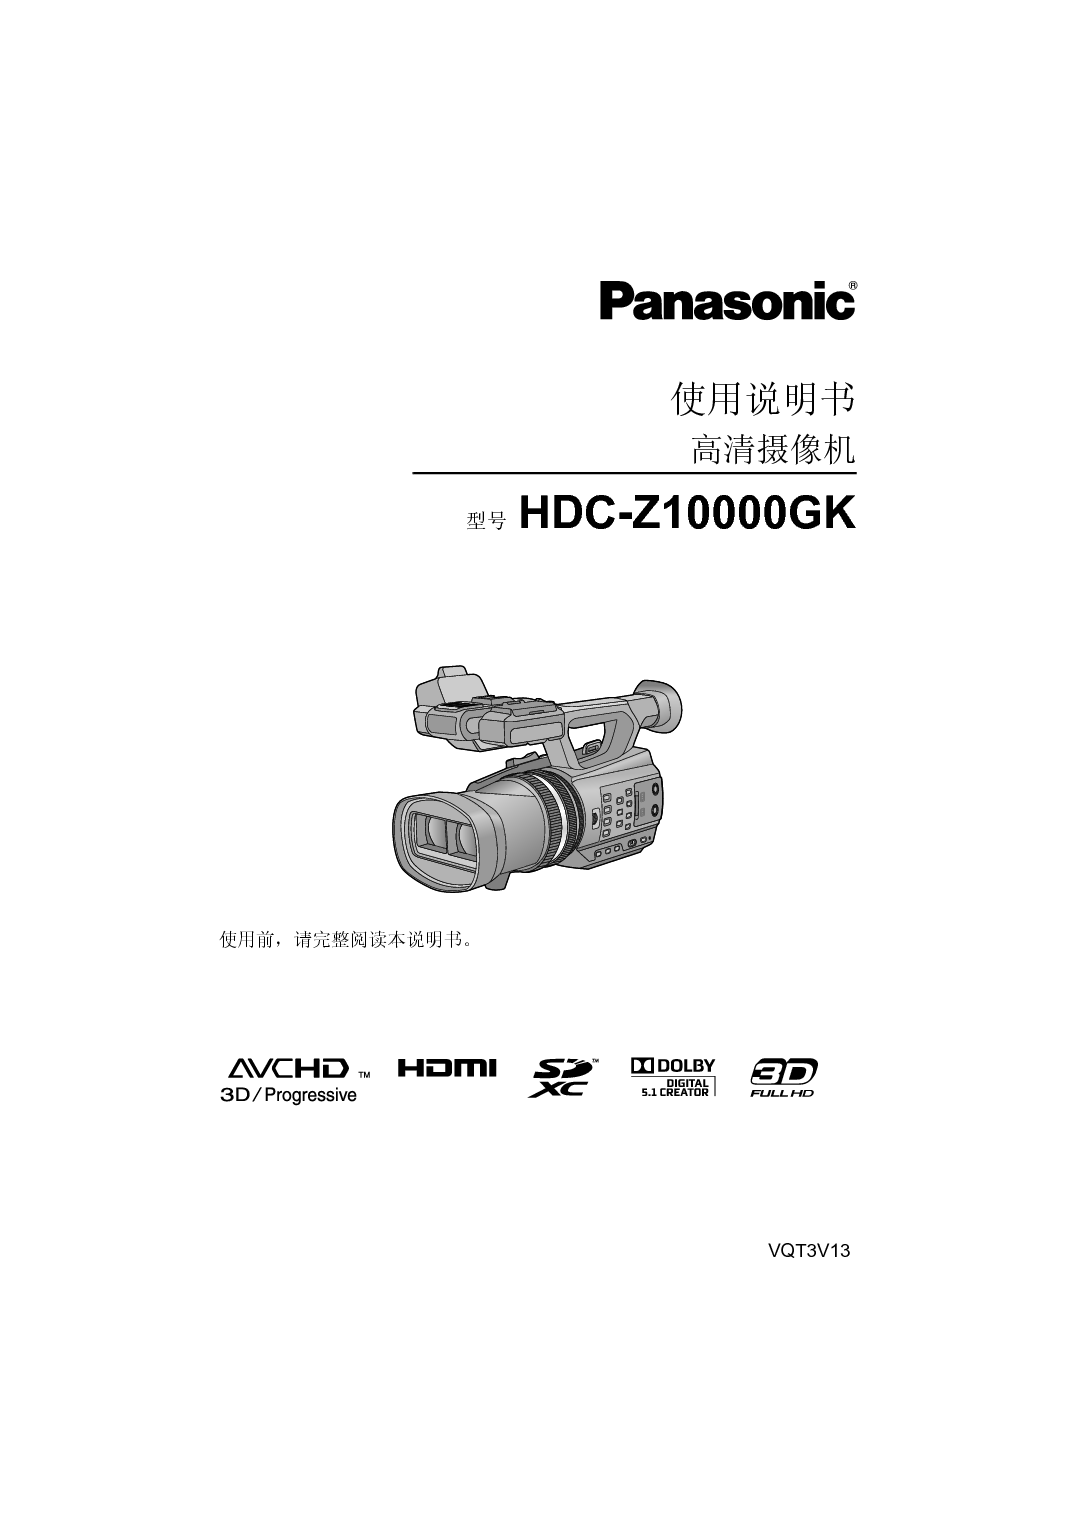 松下 Panasonic HDR-Z10000GK 说明书 封面